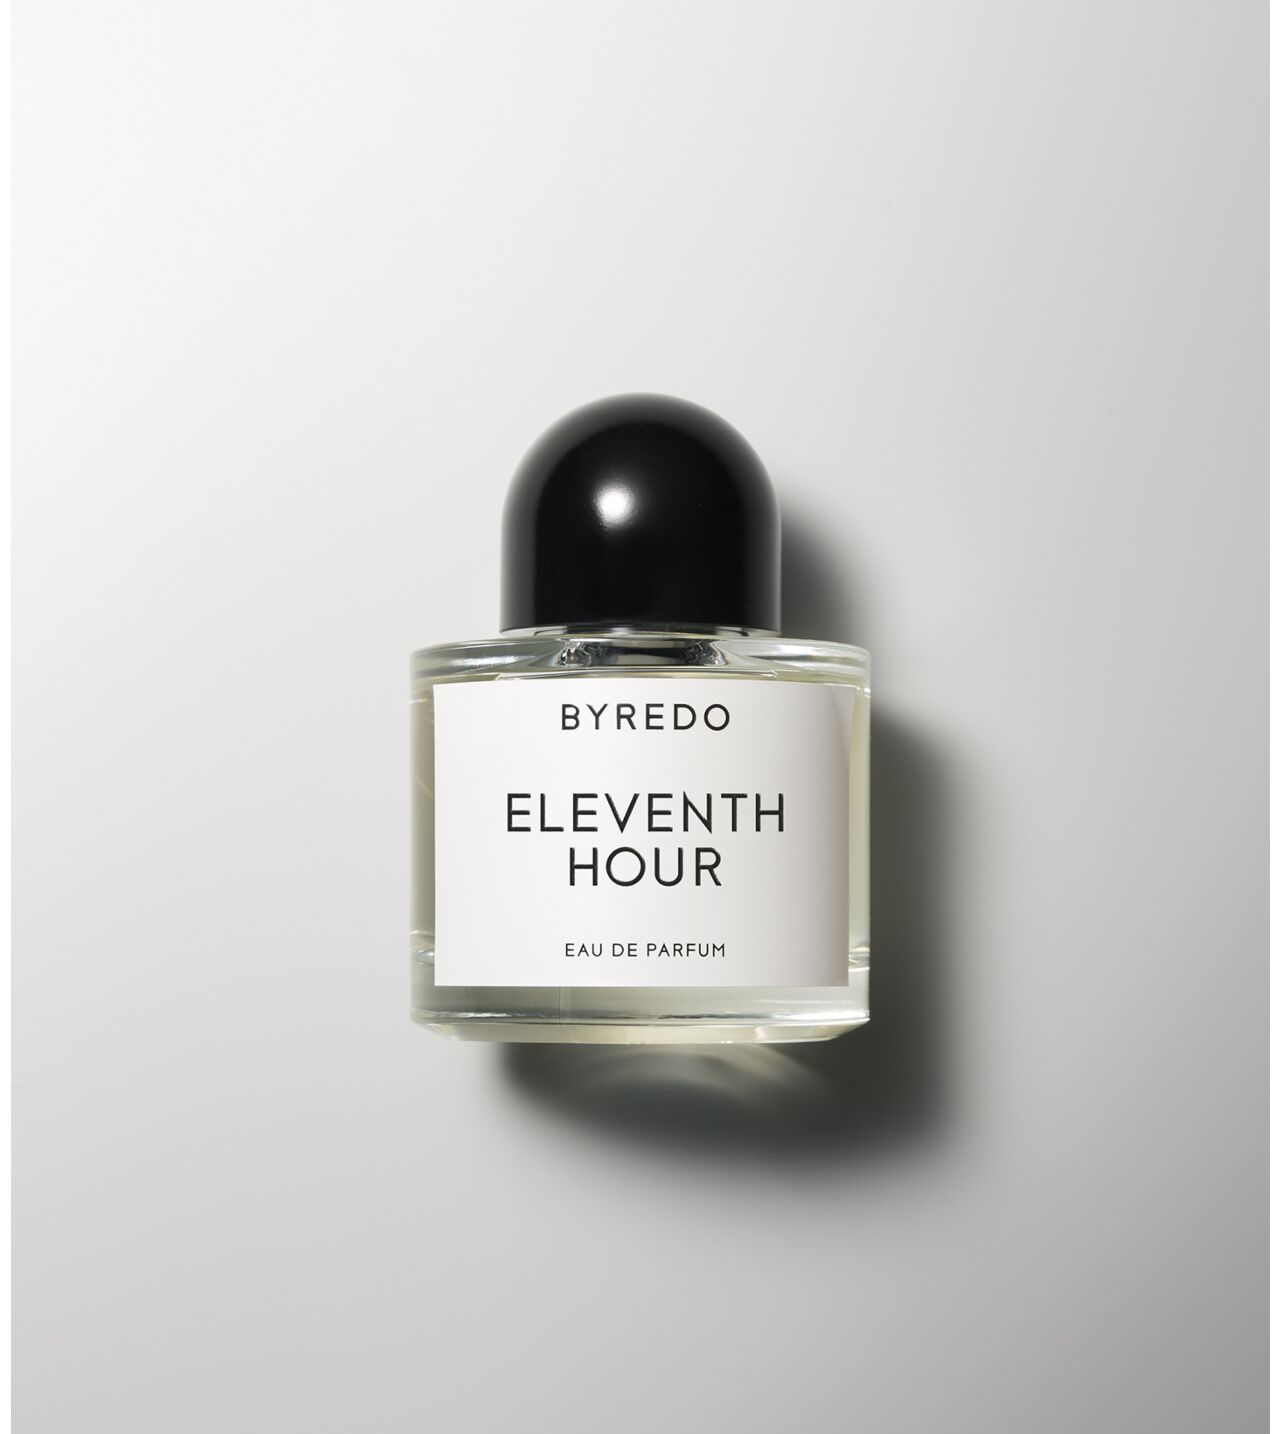 Byredo Eleventh Hour Eau De Parfum